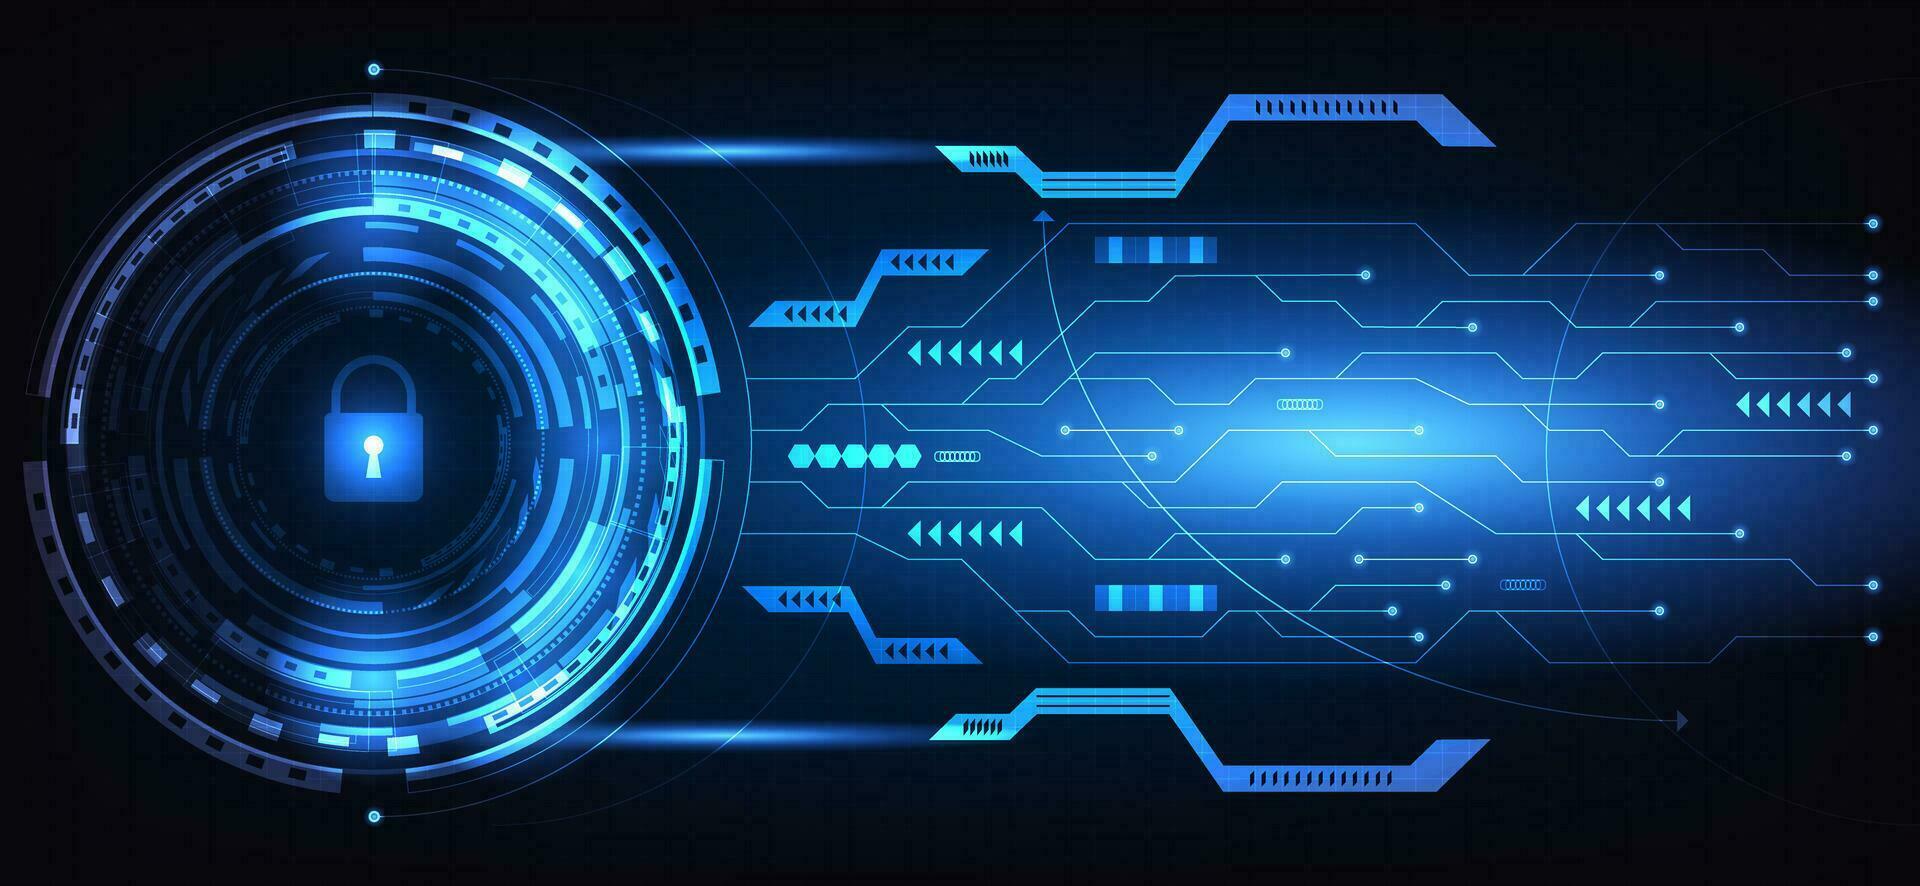 abstract technologie hangslot hi-tech futuristische cyber veiligheid sleutel en elektronisch stroomkring donker blauw achtergrond vector illustratie